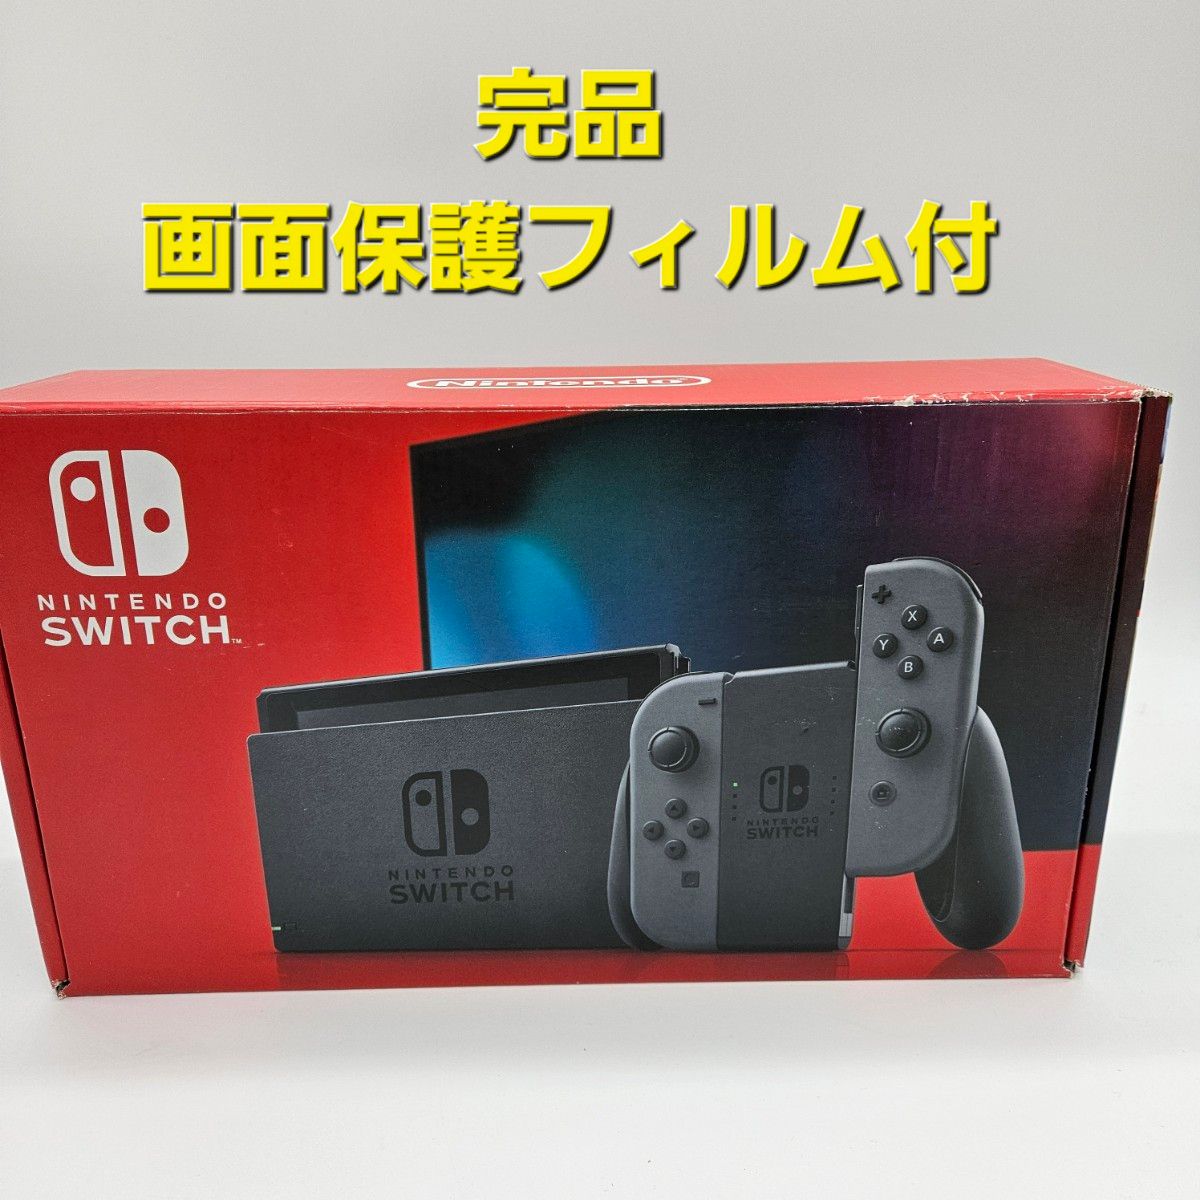 新型 Nintendo Switch ニンテンドースイッチ バッテリー強化版 本体